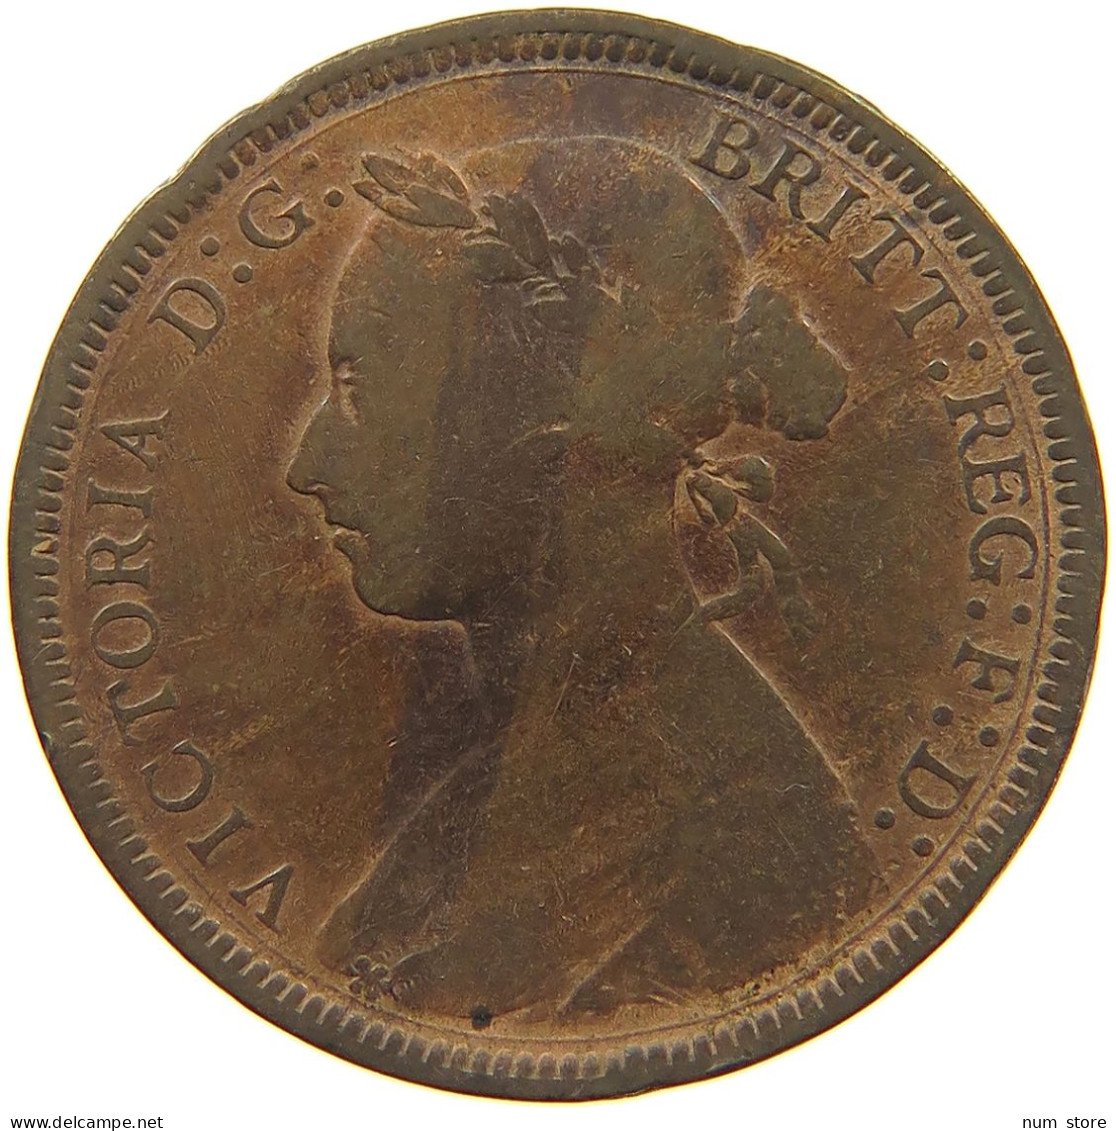 GREAT BRITAIN HALFPENNY 1887 Victoria 1837-1901 #c036 0115 - C. 1/2 Penny